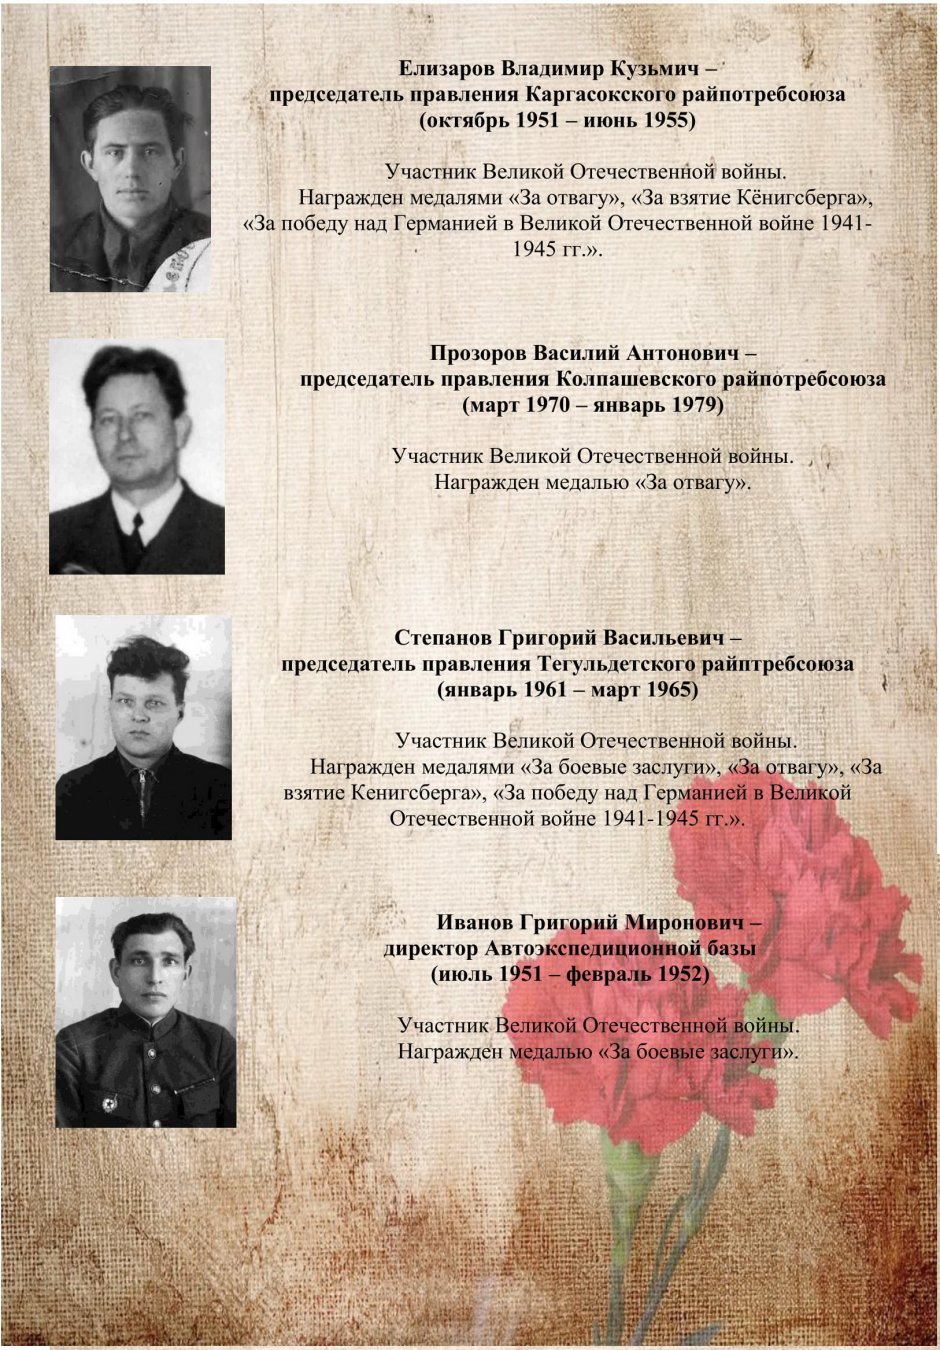 Кооператоры - участники Великой Отечественной войны